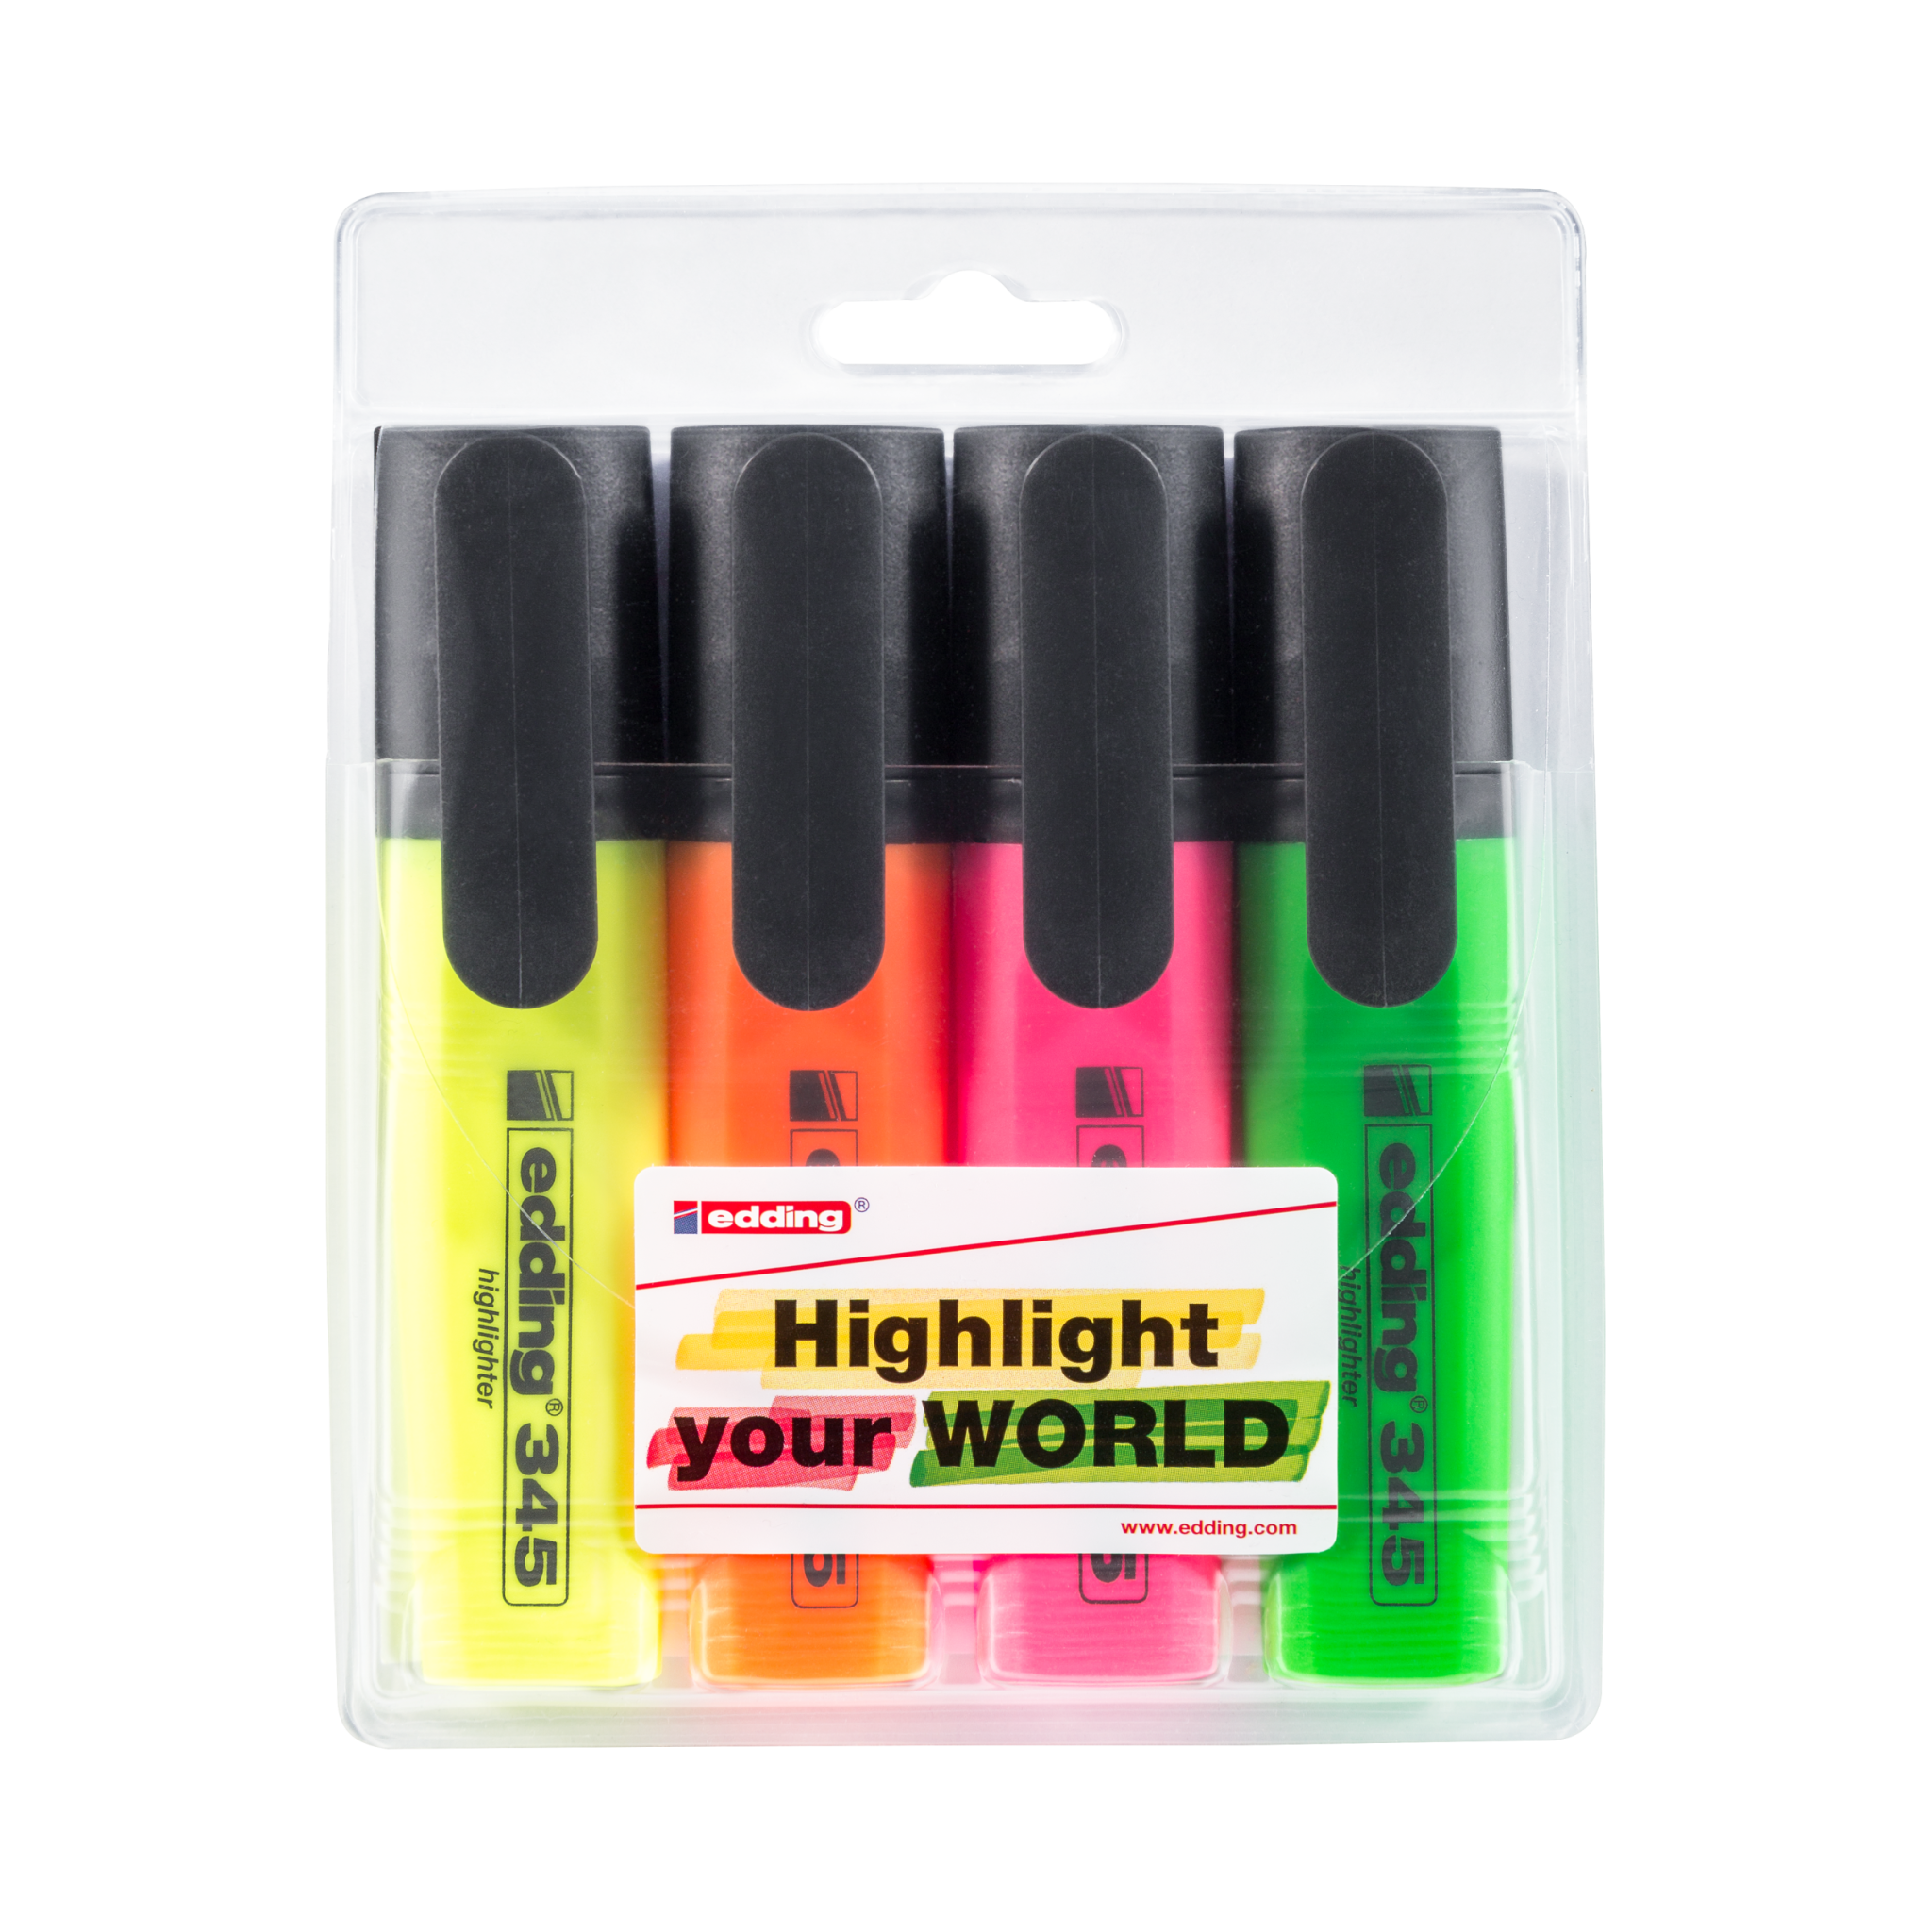 Eine Packung mit vier edding 345 Textmarker 4er-Sets in Neonfarben, versiegelt in einer Plastikblisterverpackung mit edding-Branding und Werbetext.